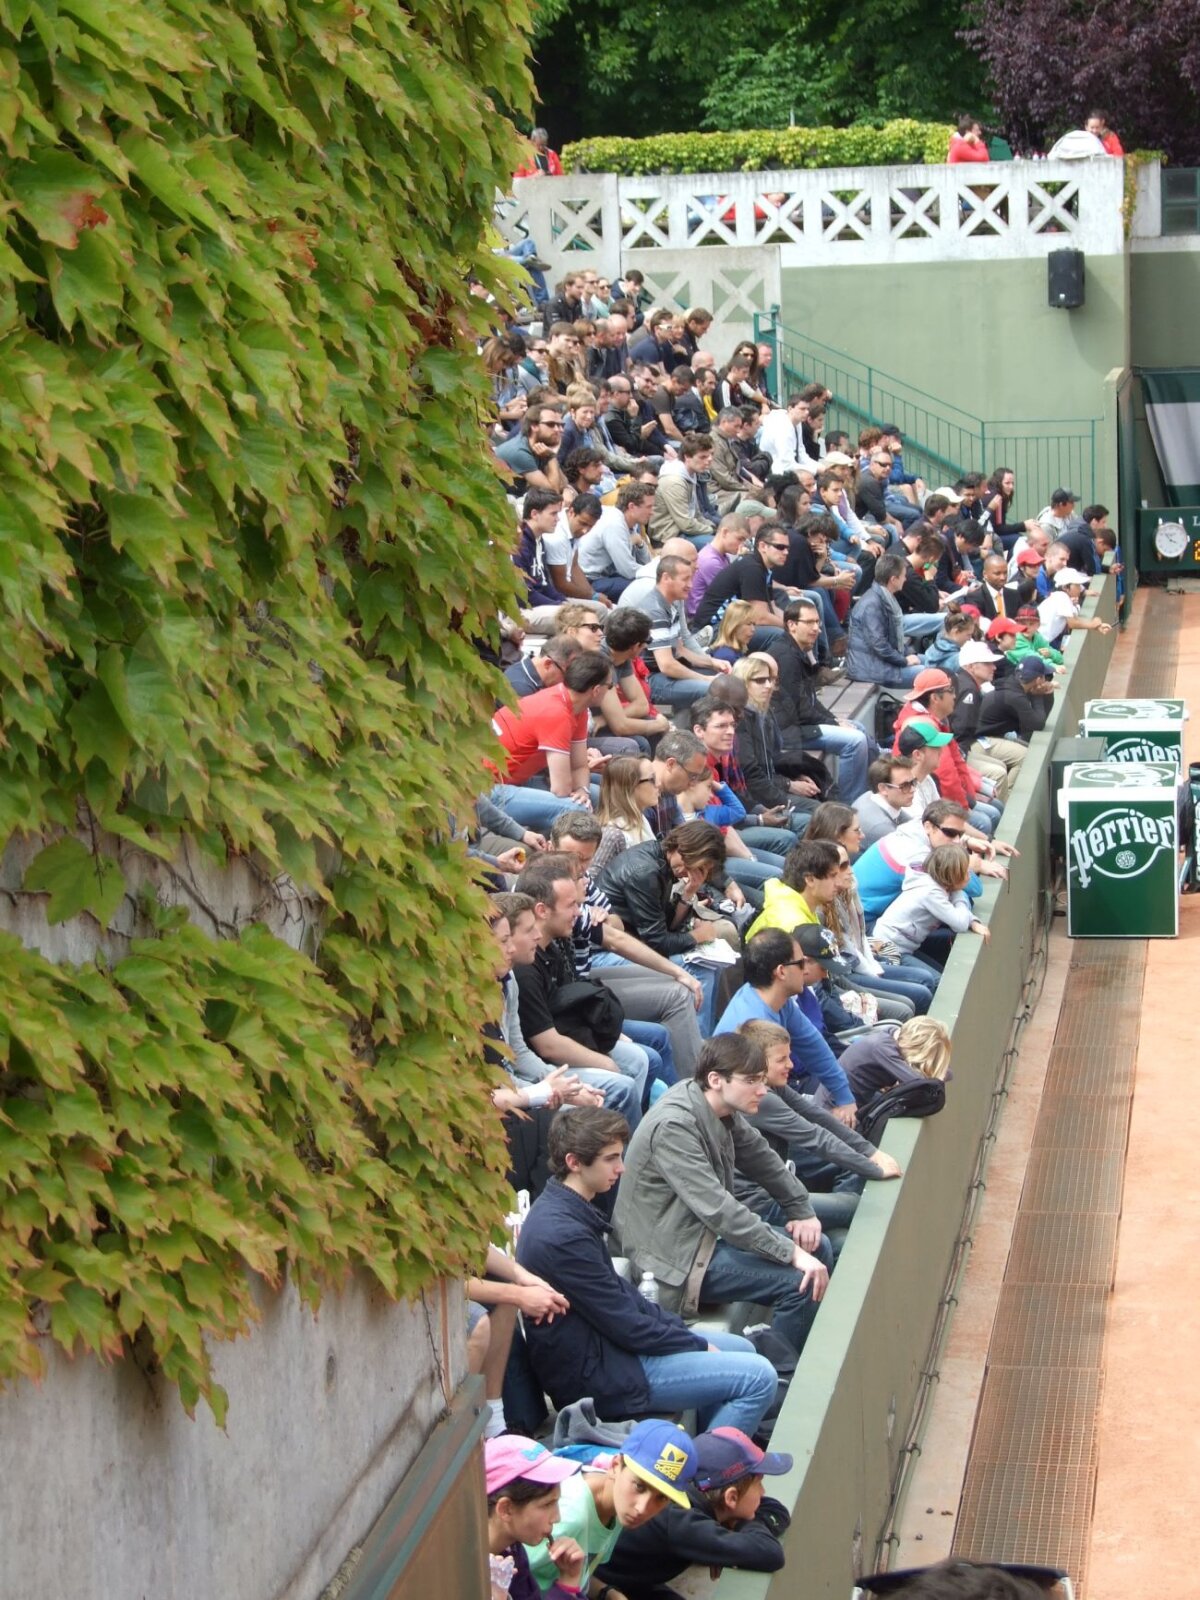 Corespondenţă din Paris » Tenisul cu iederă » Faţa mai puţin cunoscută de la Roland Garros: ce se vede dincolo de ”Philippe-Chatrier”